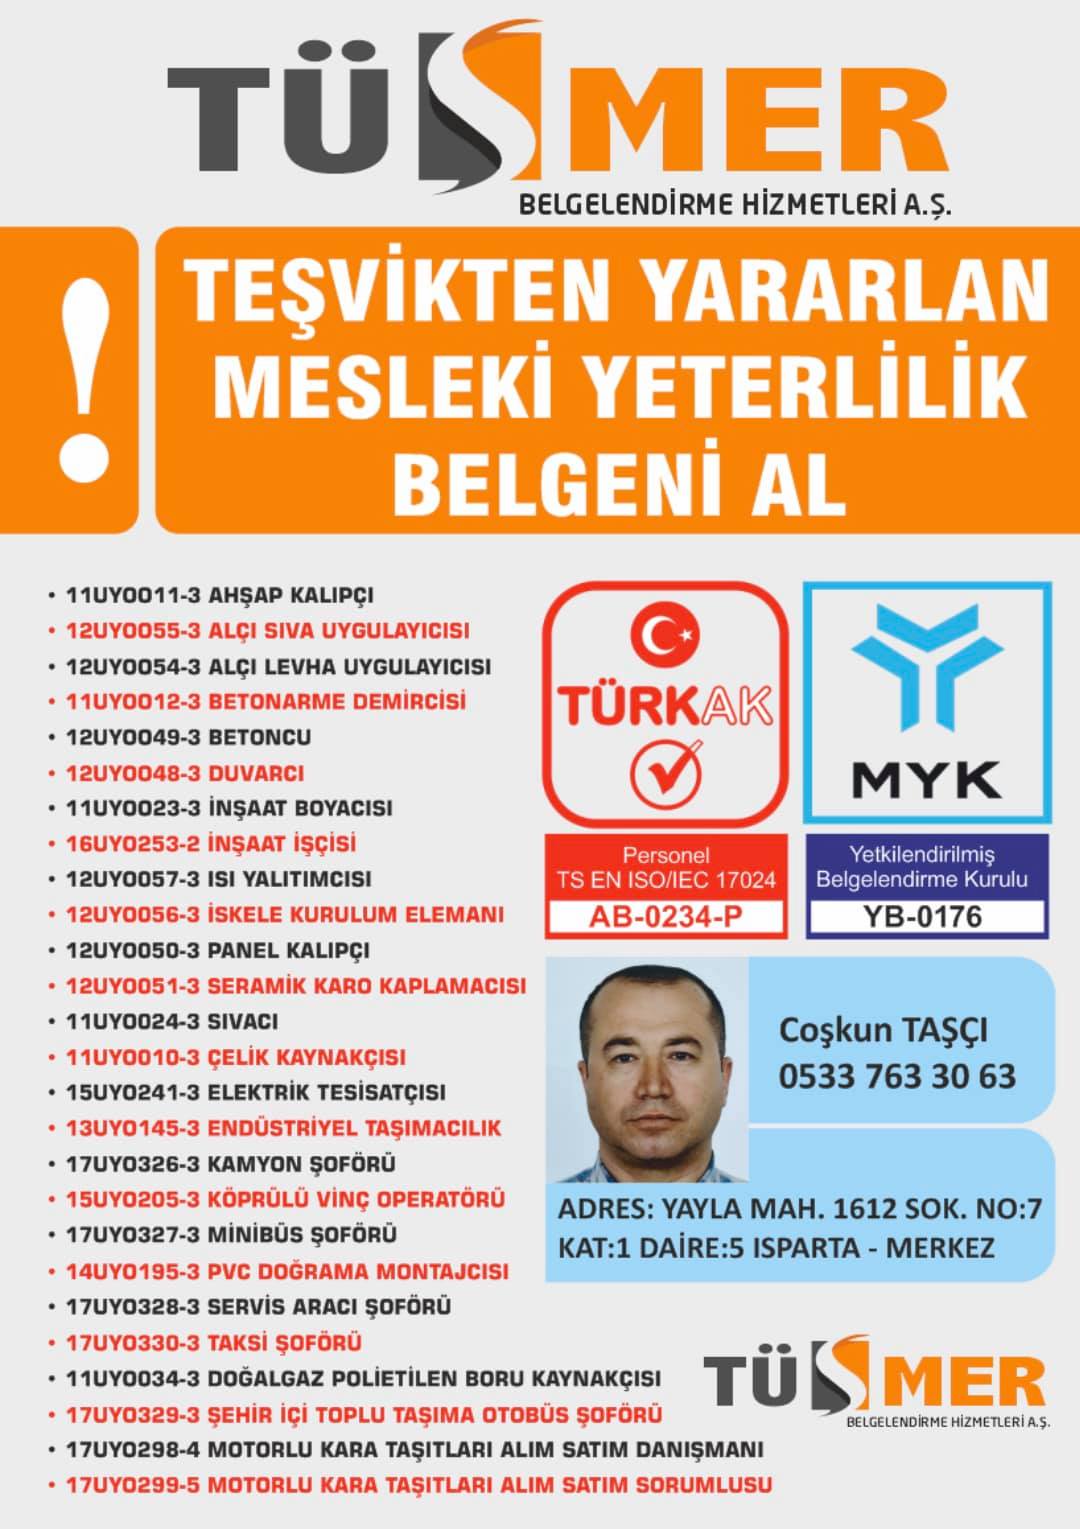 MYK MESLEKİ YETERLİLİK BELGESİ Bostancı Kadıköy İstanbul